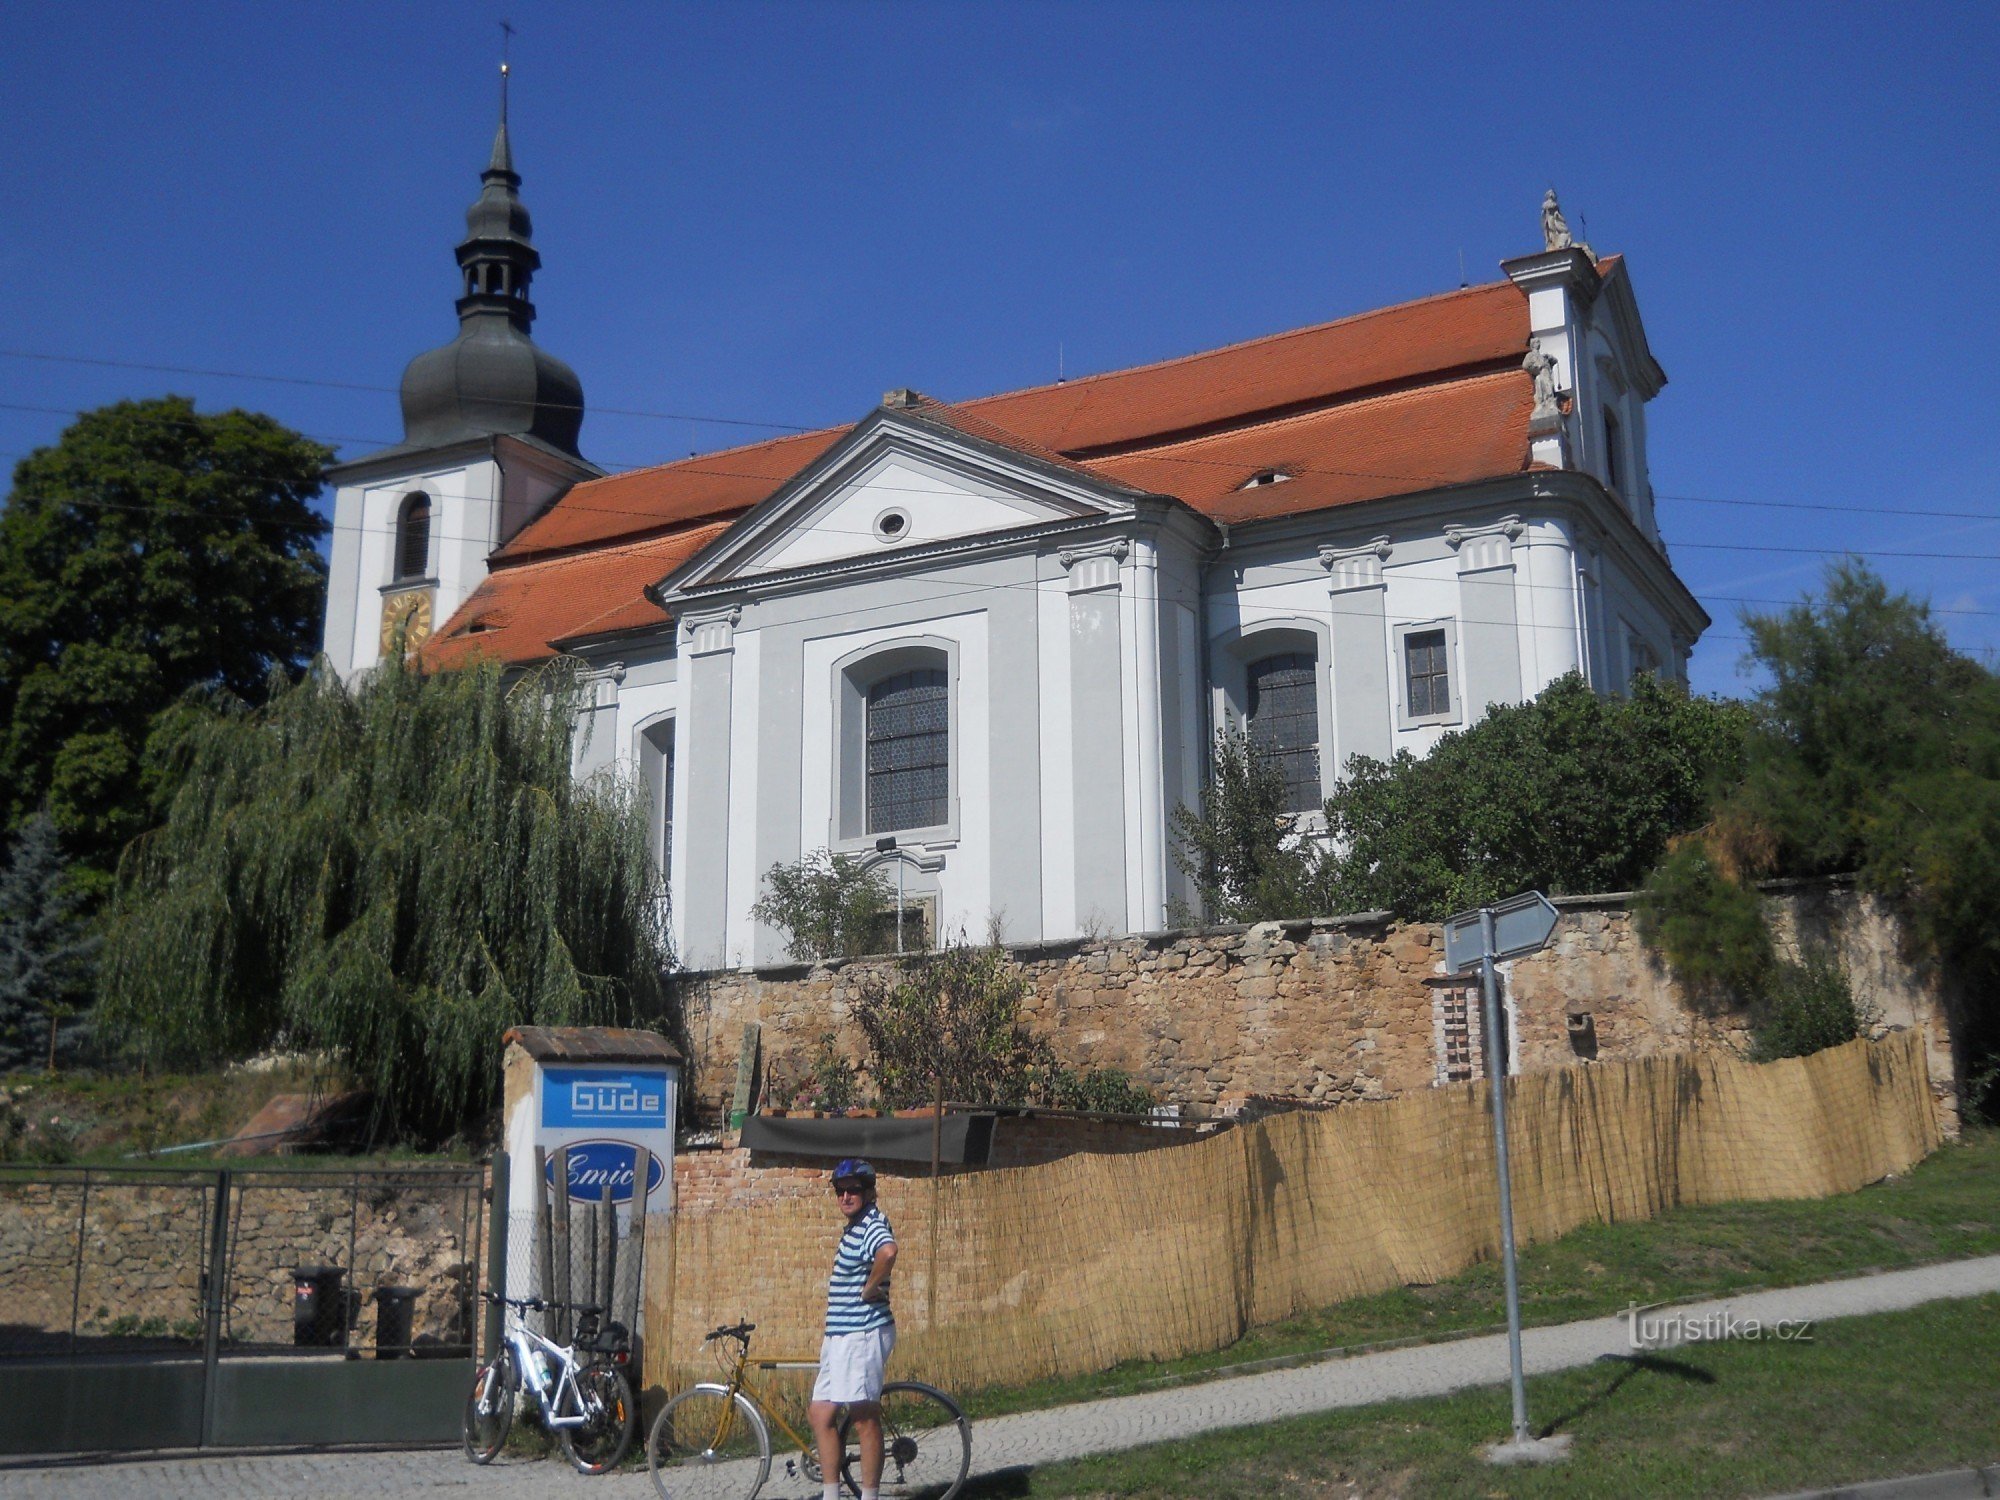 Vejprnice - biserica baroc Sf. Vojtěch din 1722 - 1726